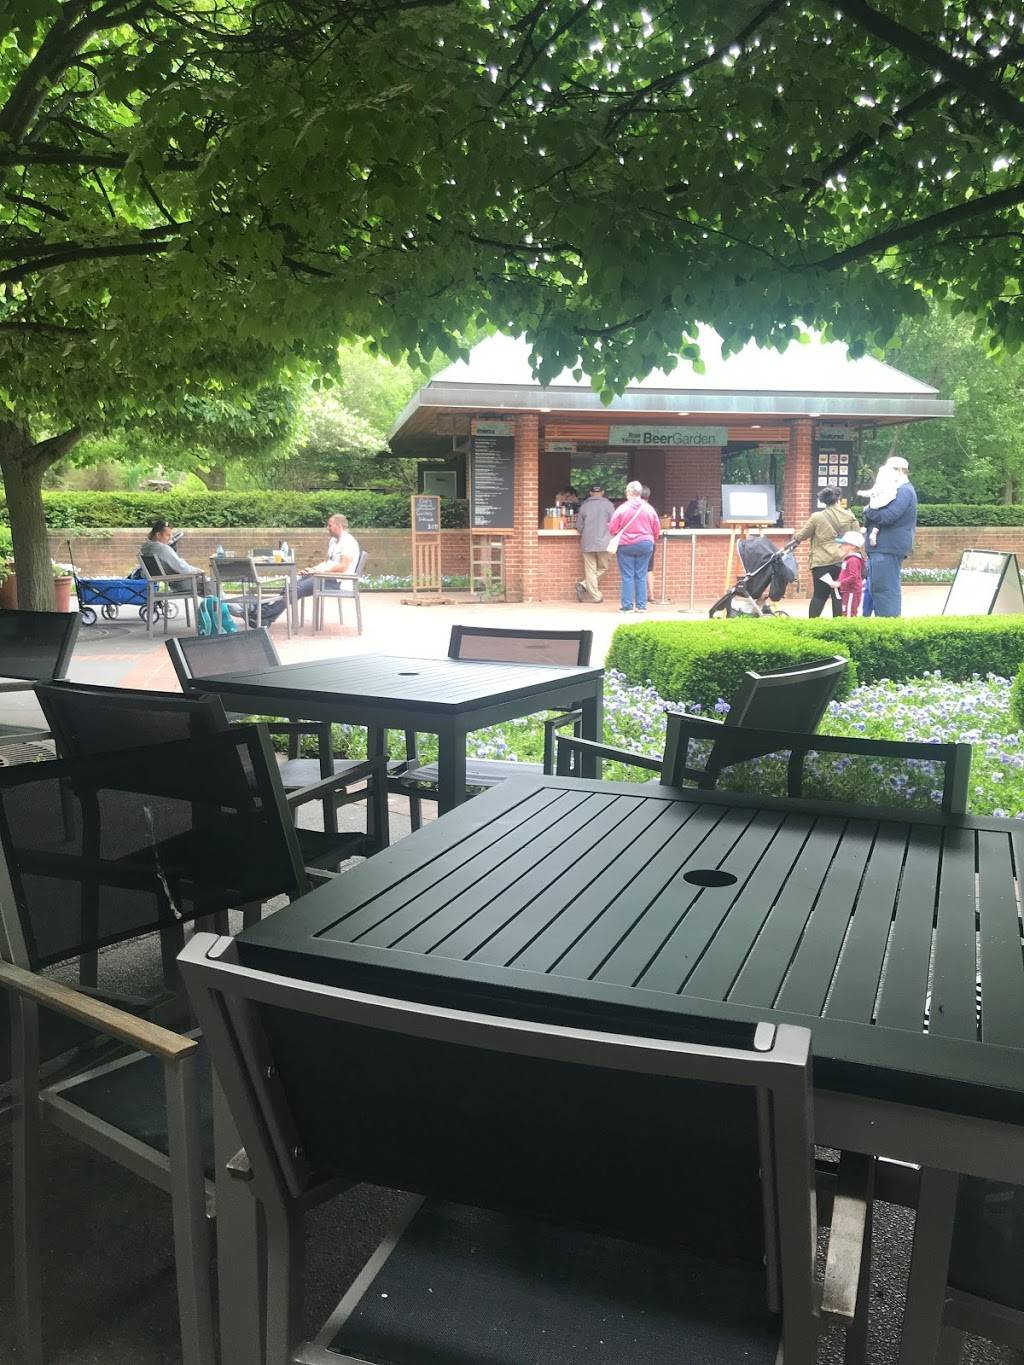 The Garden View Café at the Chicago Botanic Garden | cafe | 1000 Lake Cook Rd, Glencoe, IL 60022, USA | 8478358375 OR +1 847-835-8375